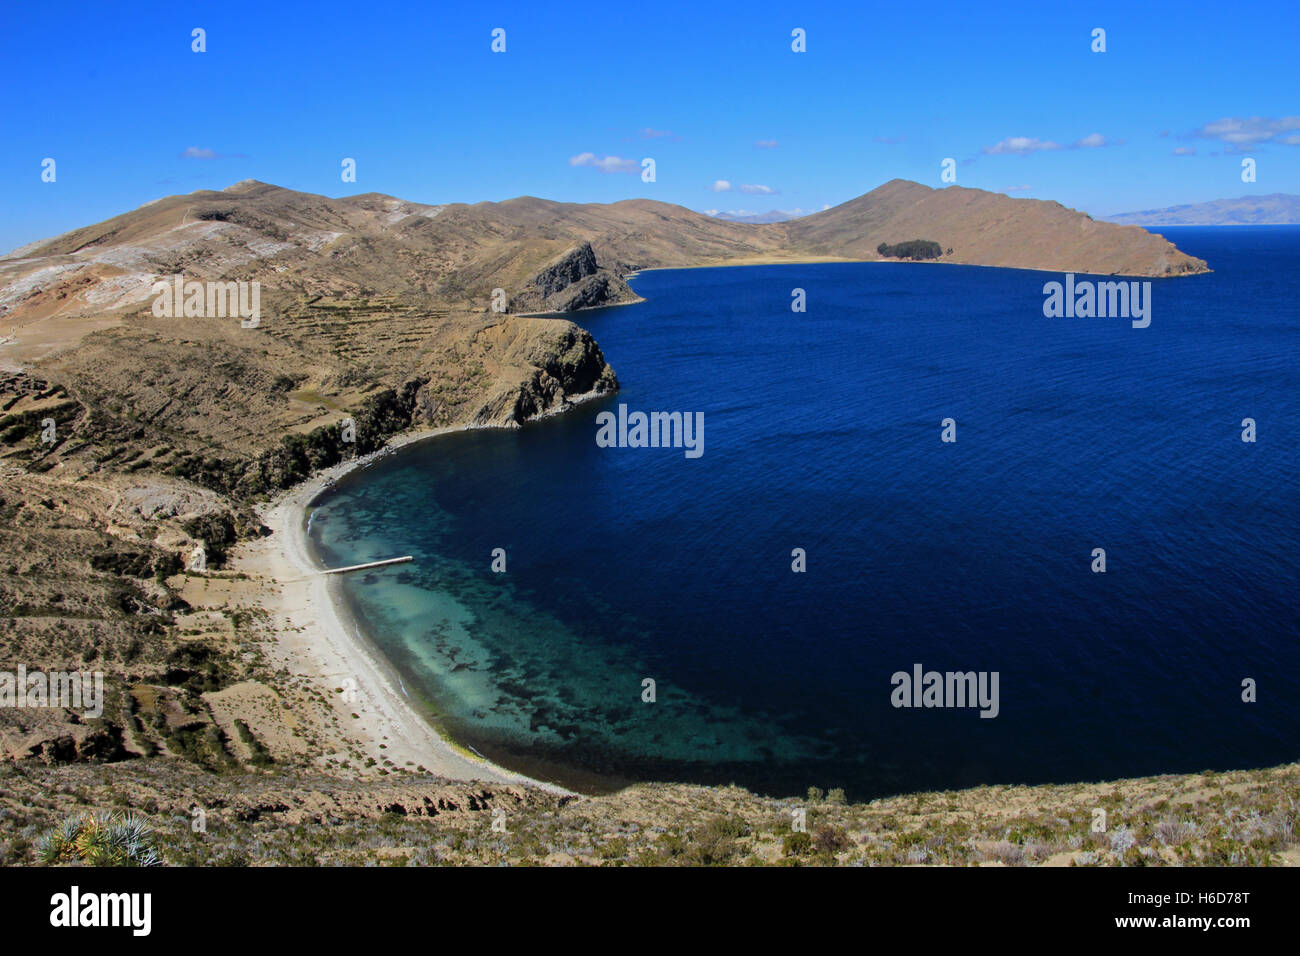 Bay sull'isola del sole, il lago Titicaca, Bolivia Foto Stock